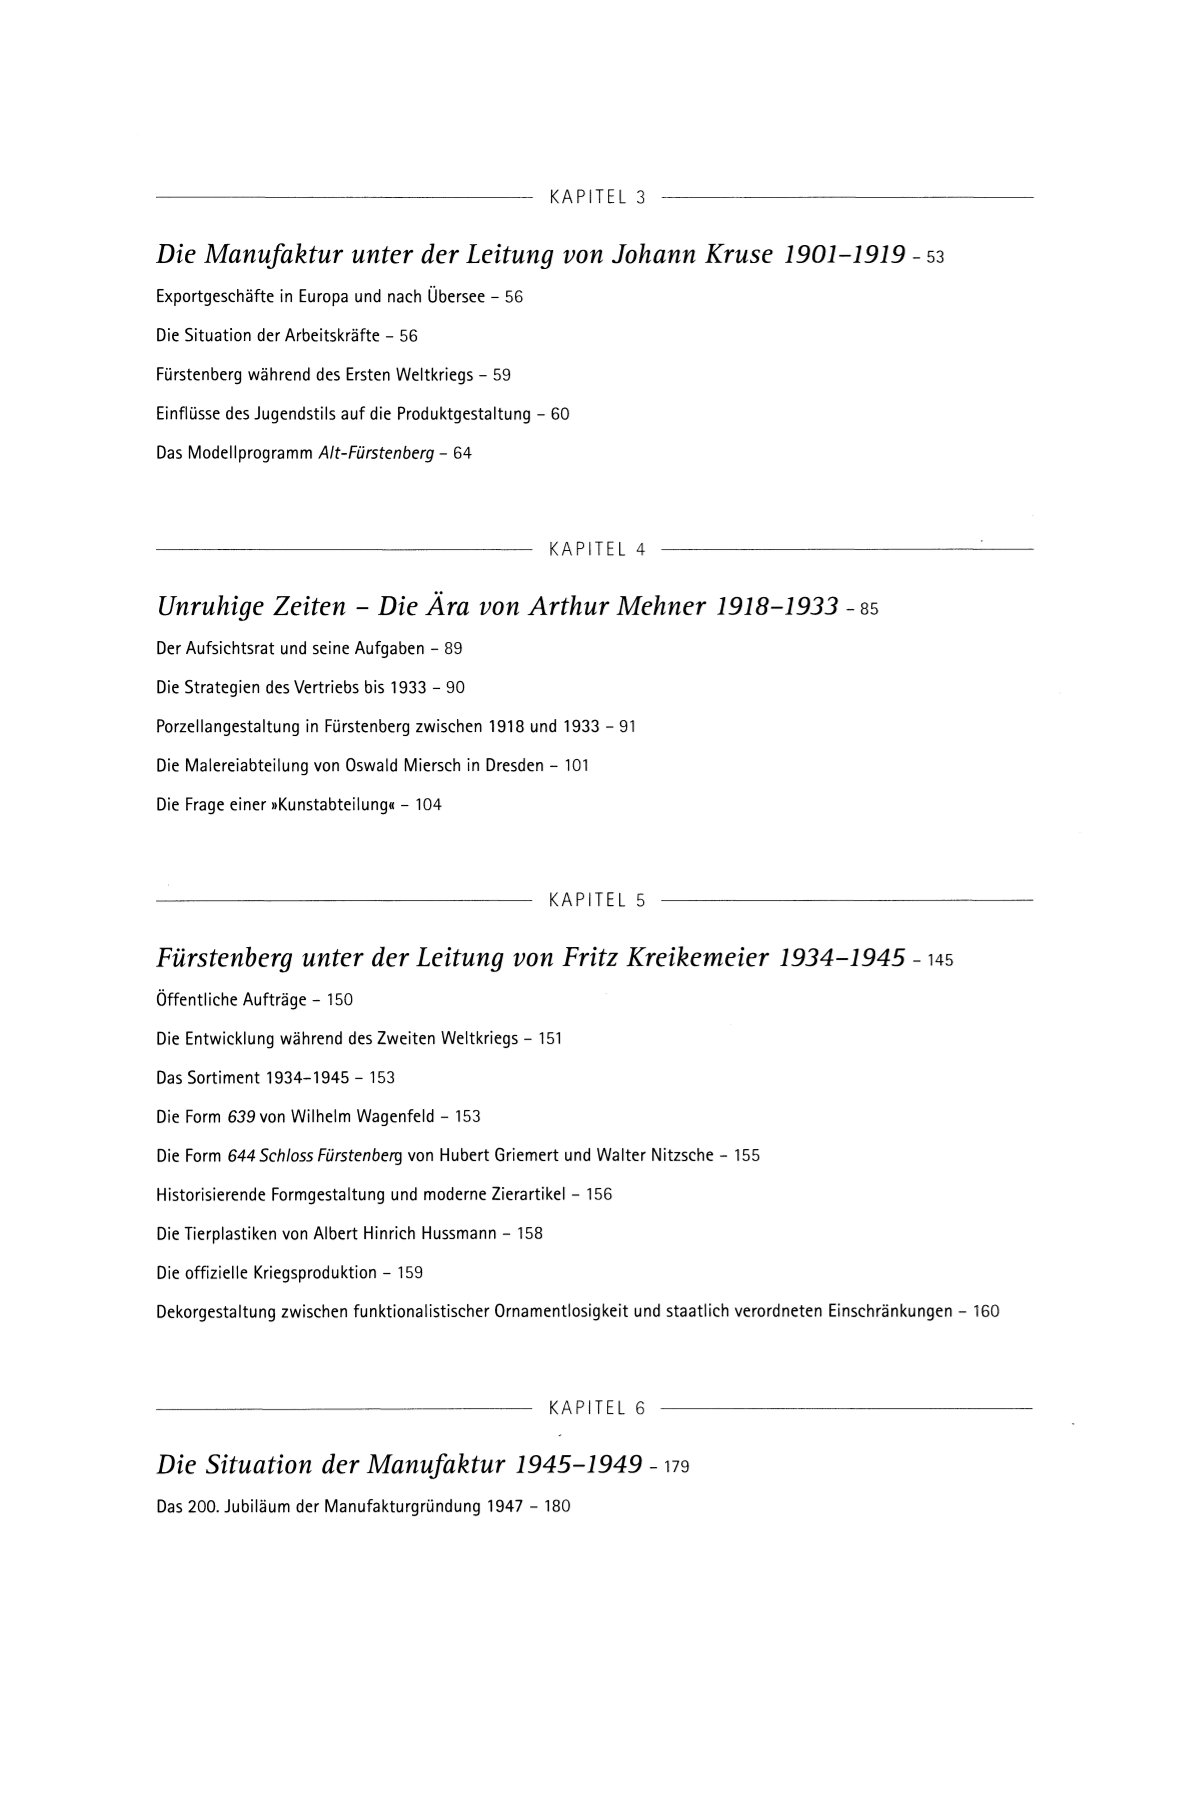 Die Porzellanmanufaktur Fürstenberg, Gesamtkompendium Band I-III